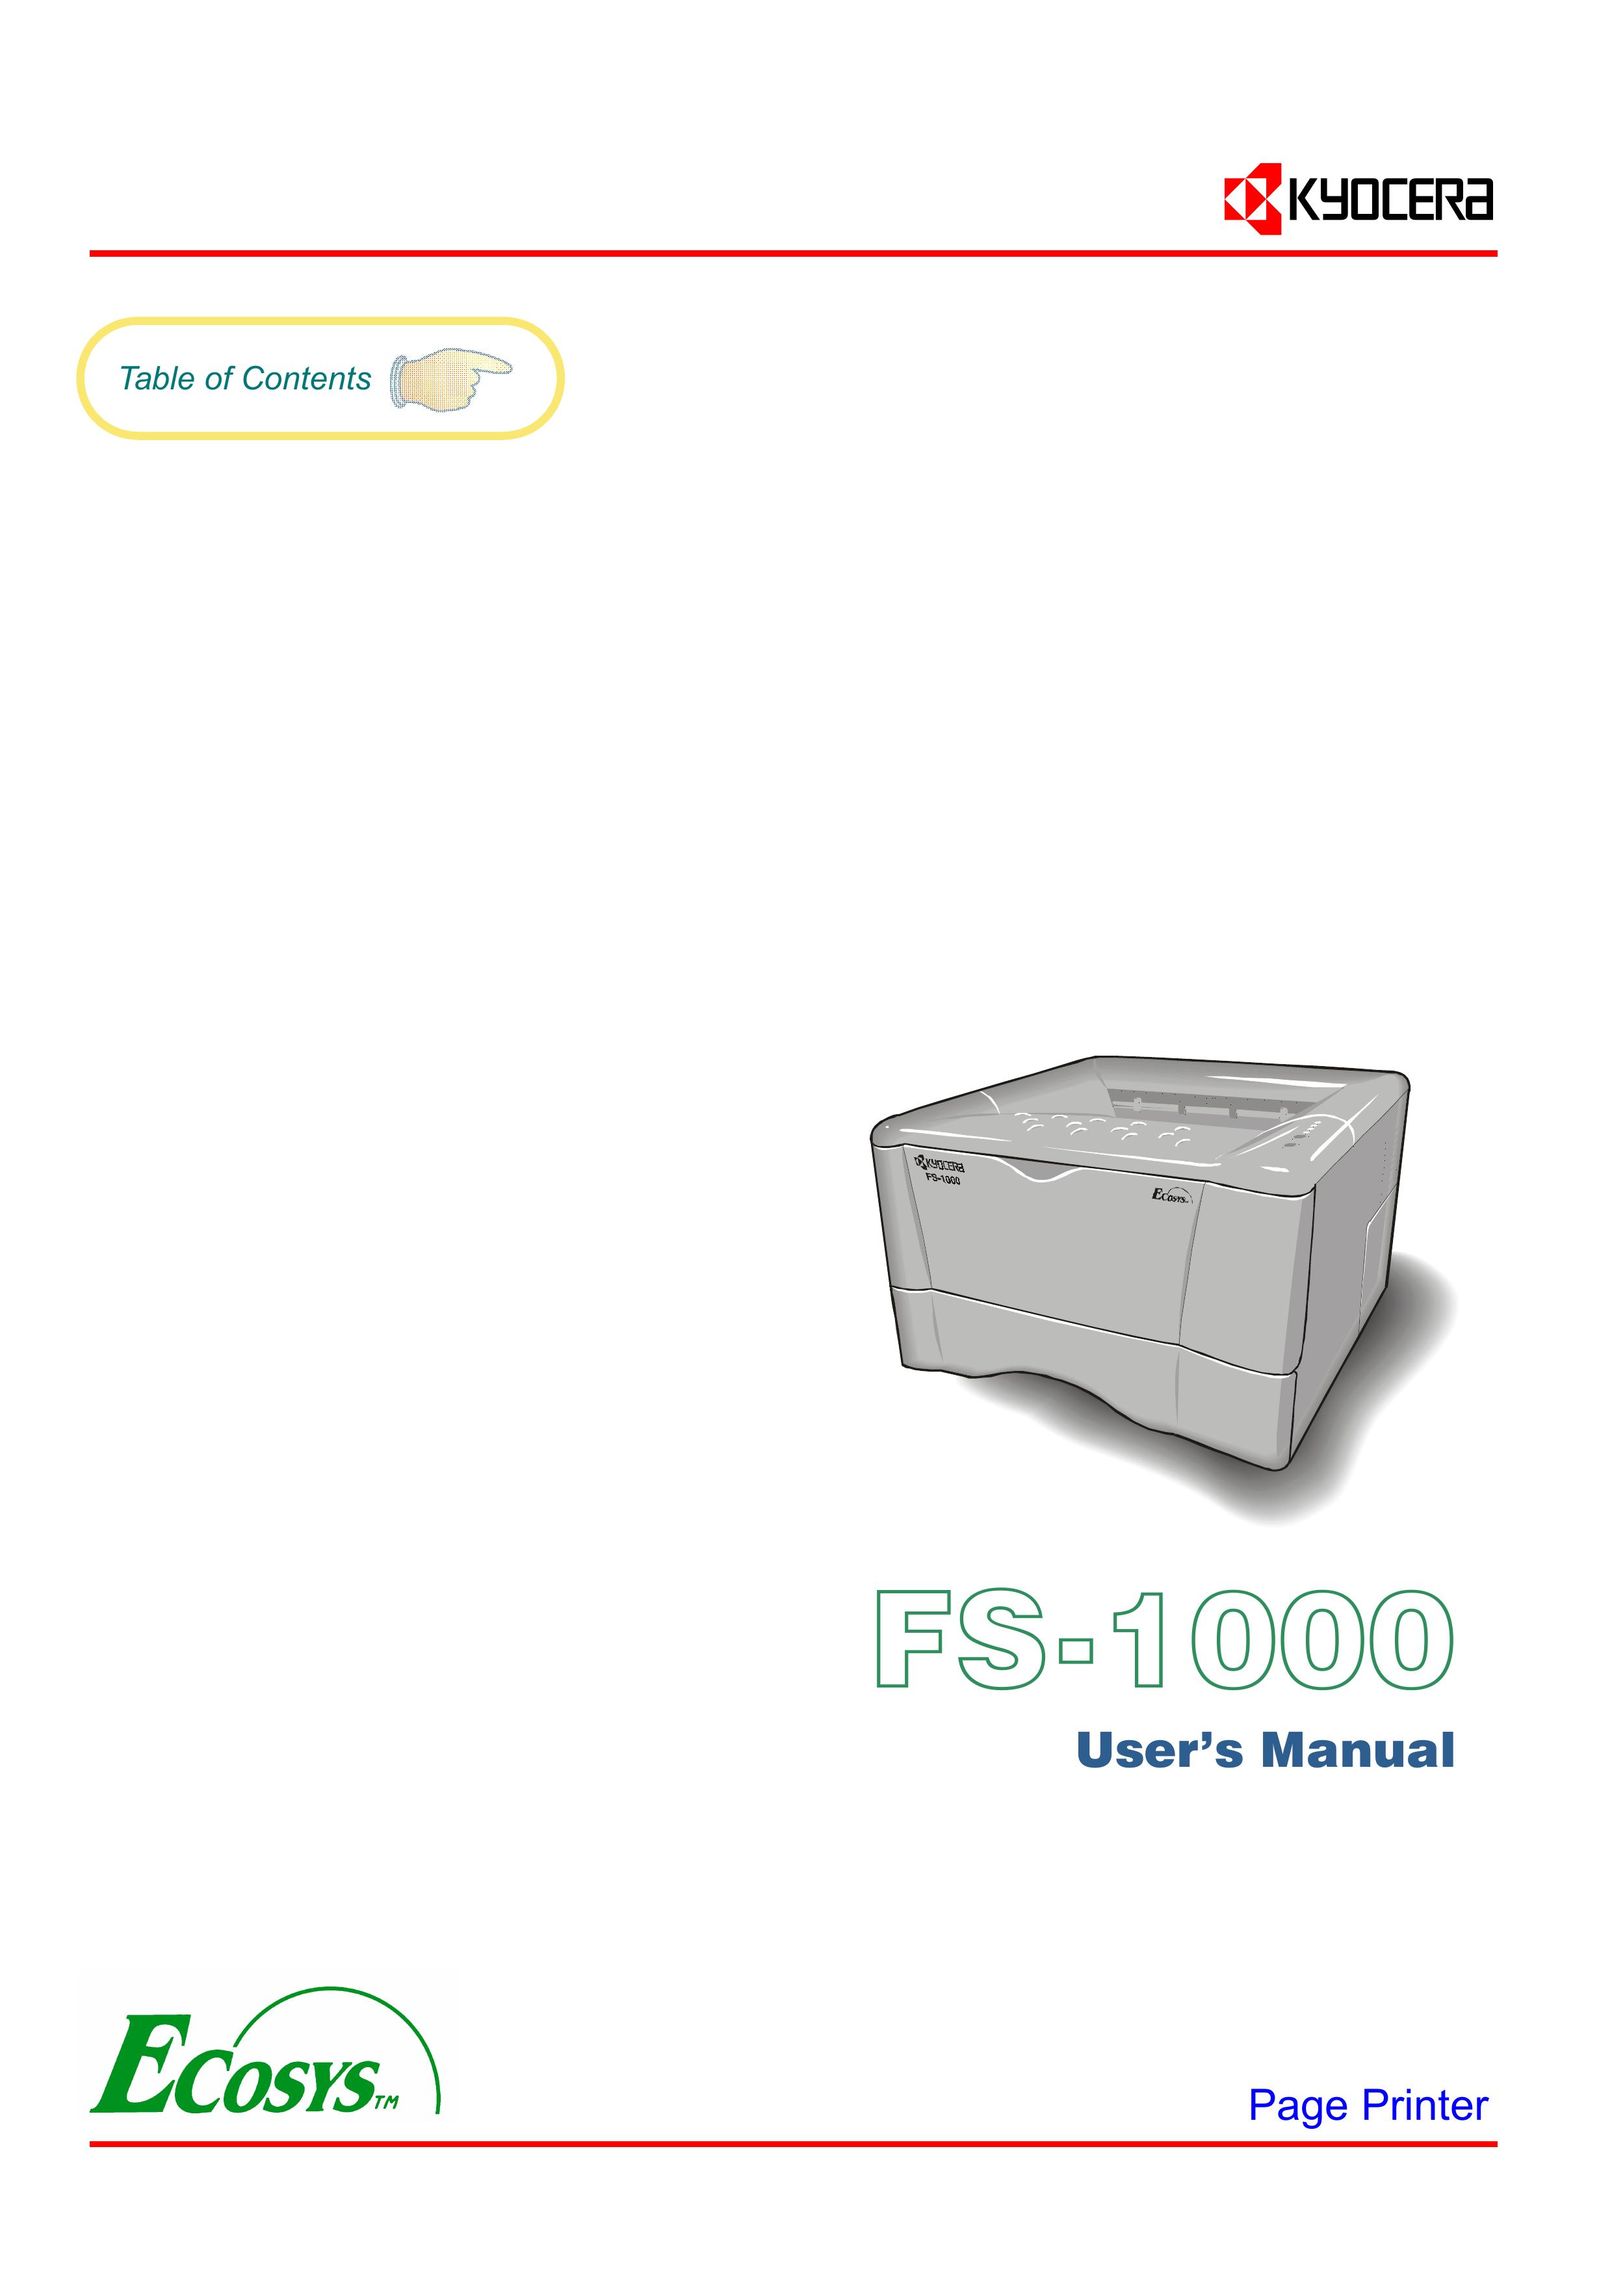 Kyocera FS-1000 Printer User Manual